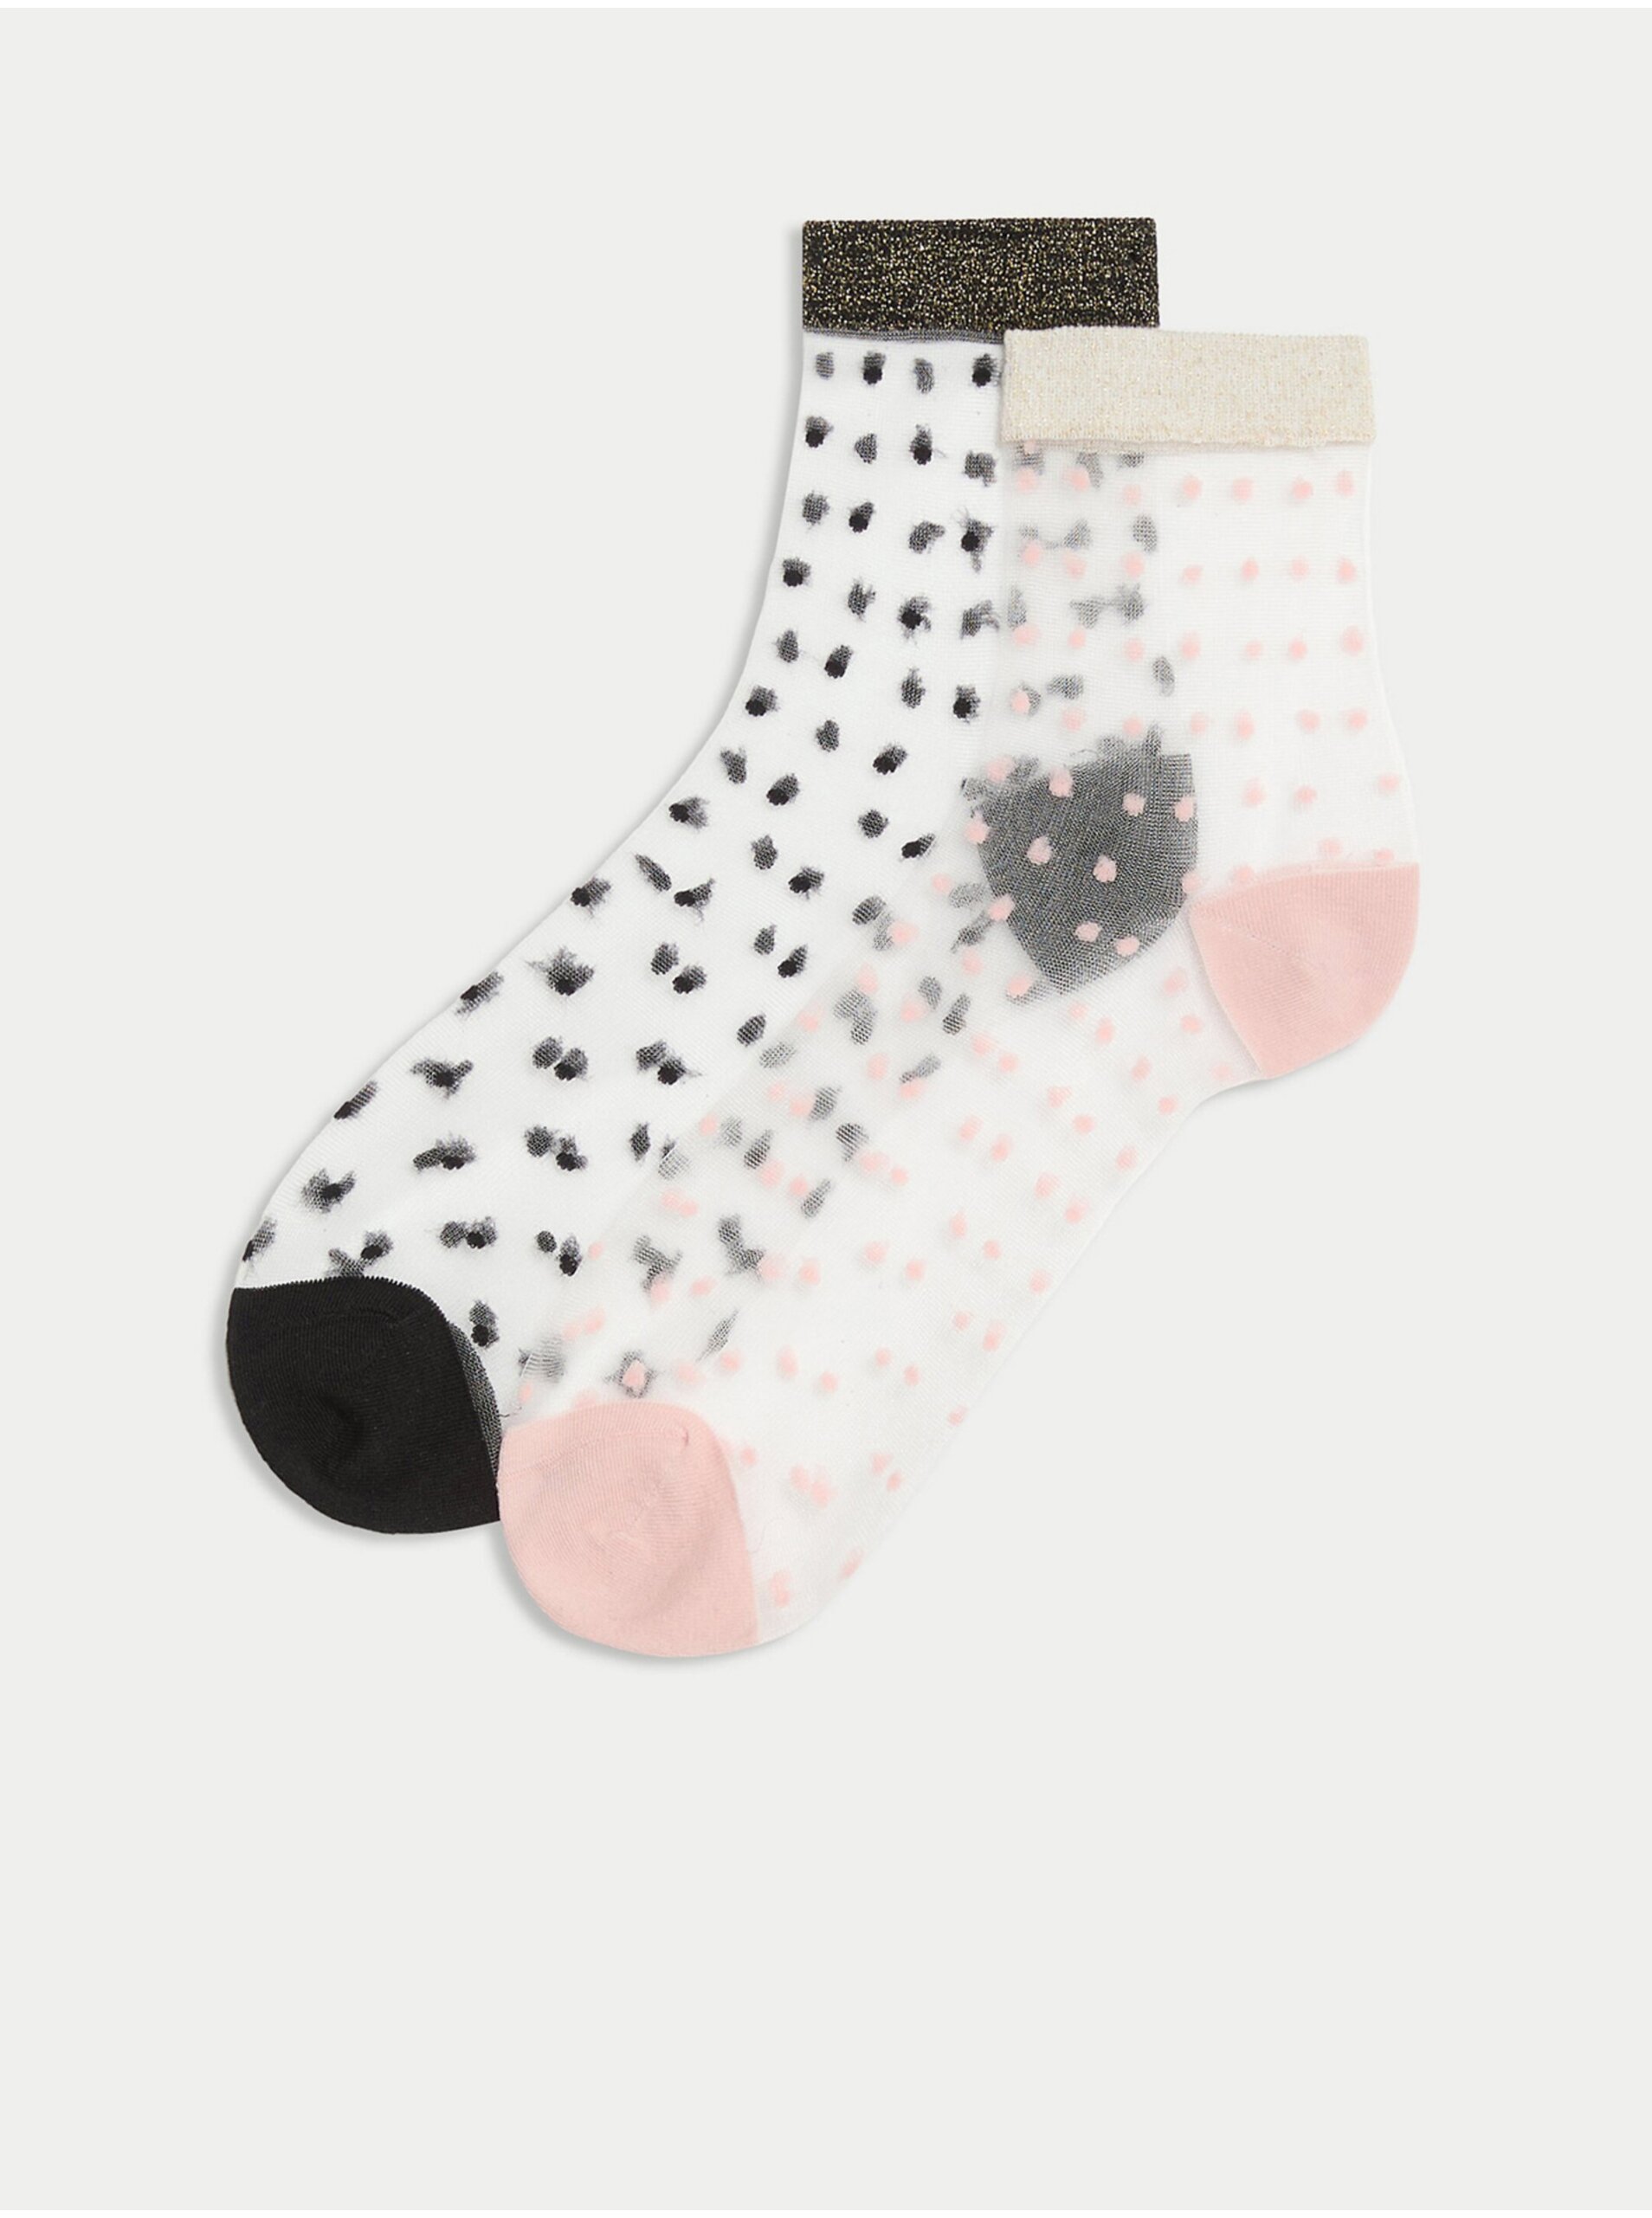 Lacno Súprava dvoch párov dámskych vzorovaných priesvitných ponožiek v čiernej a ružovej farbe Marks & Spencer